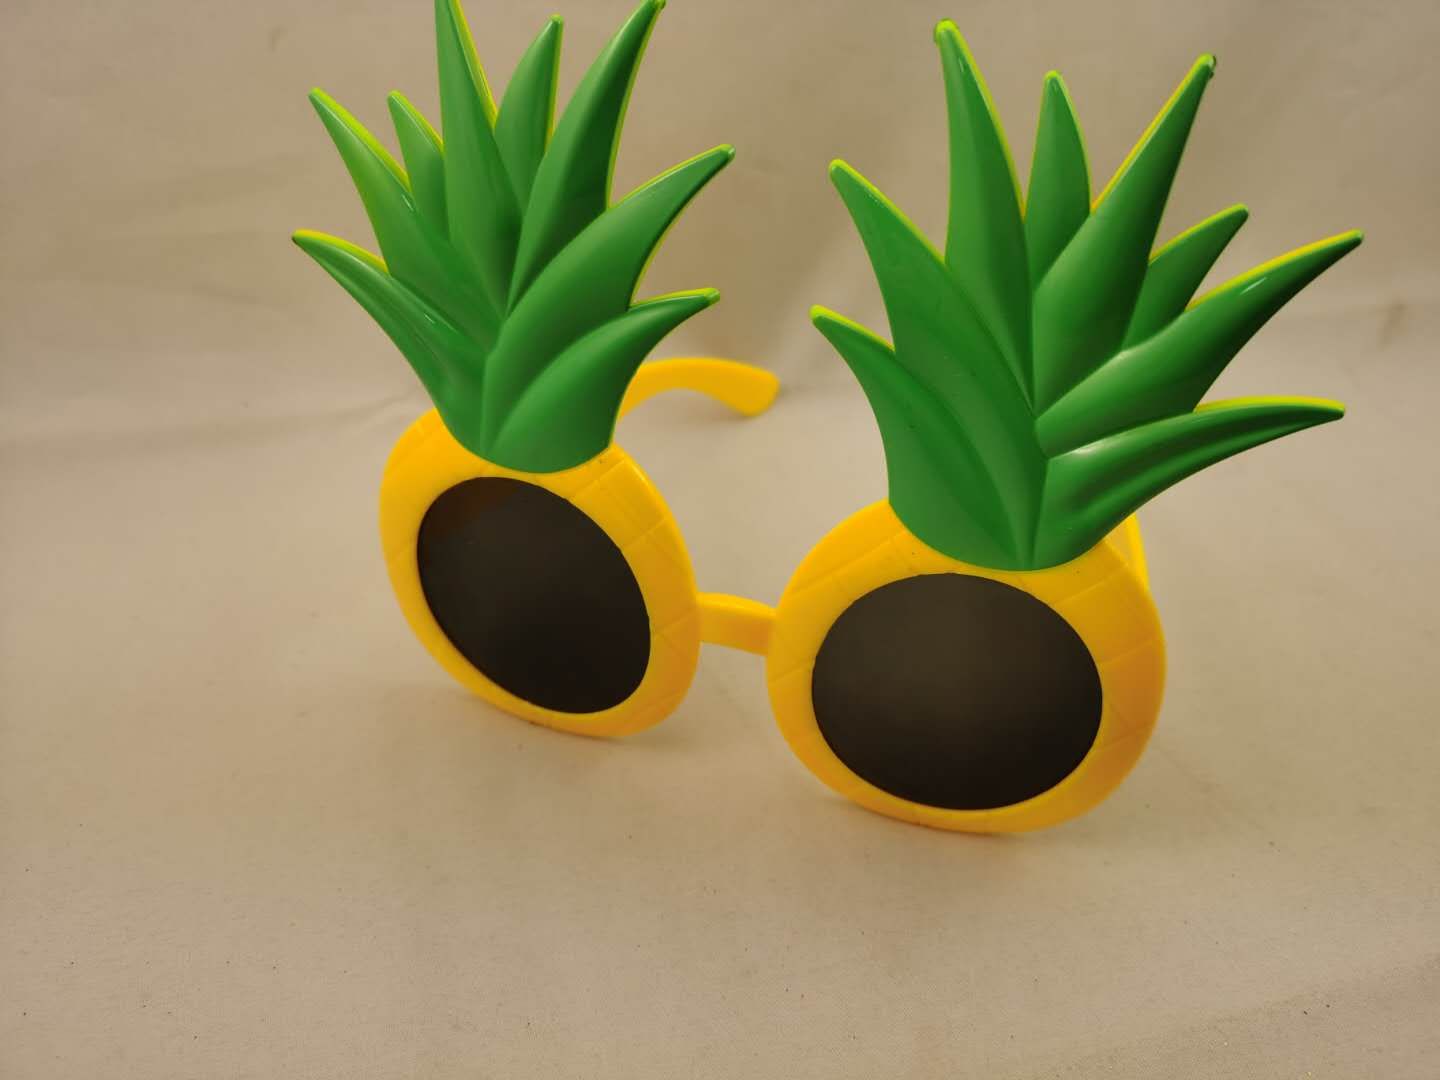 夏威夷海洋菠萝沙滩狂欢派对眼镜生日派对party化妆舞会搞怪造型图